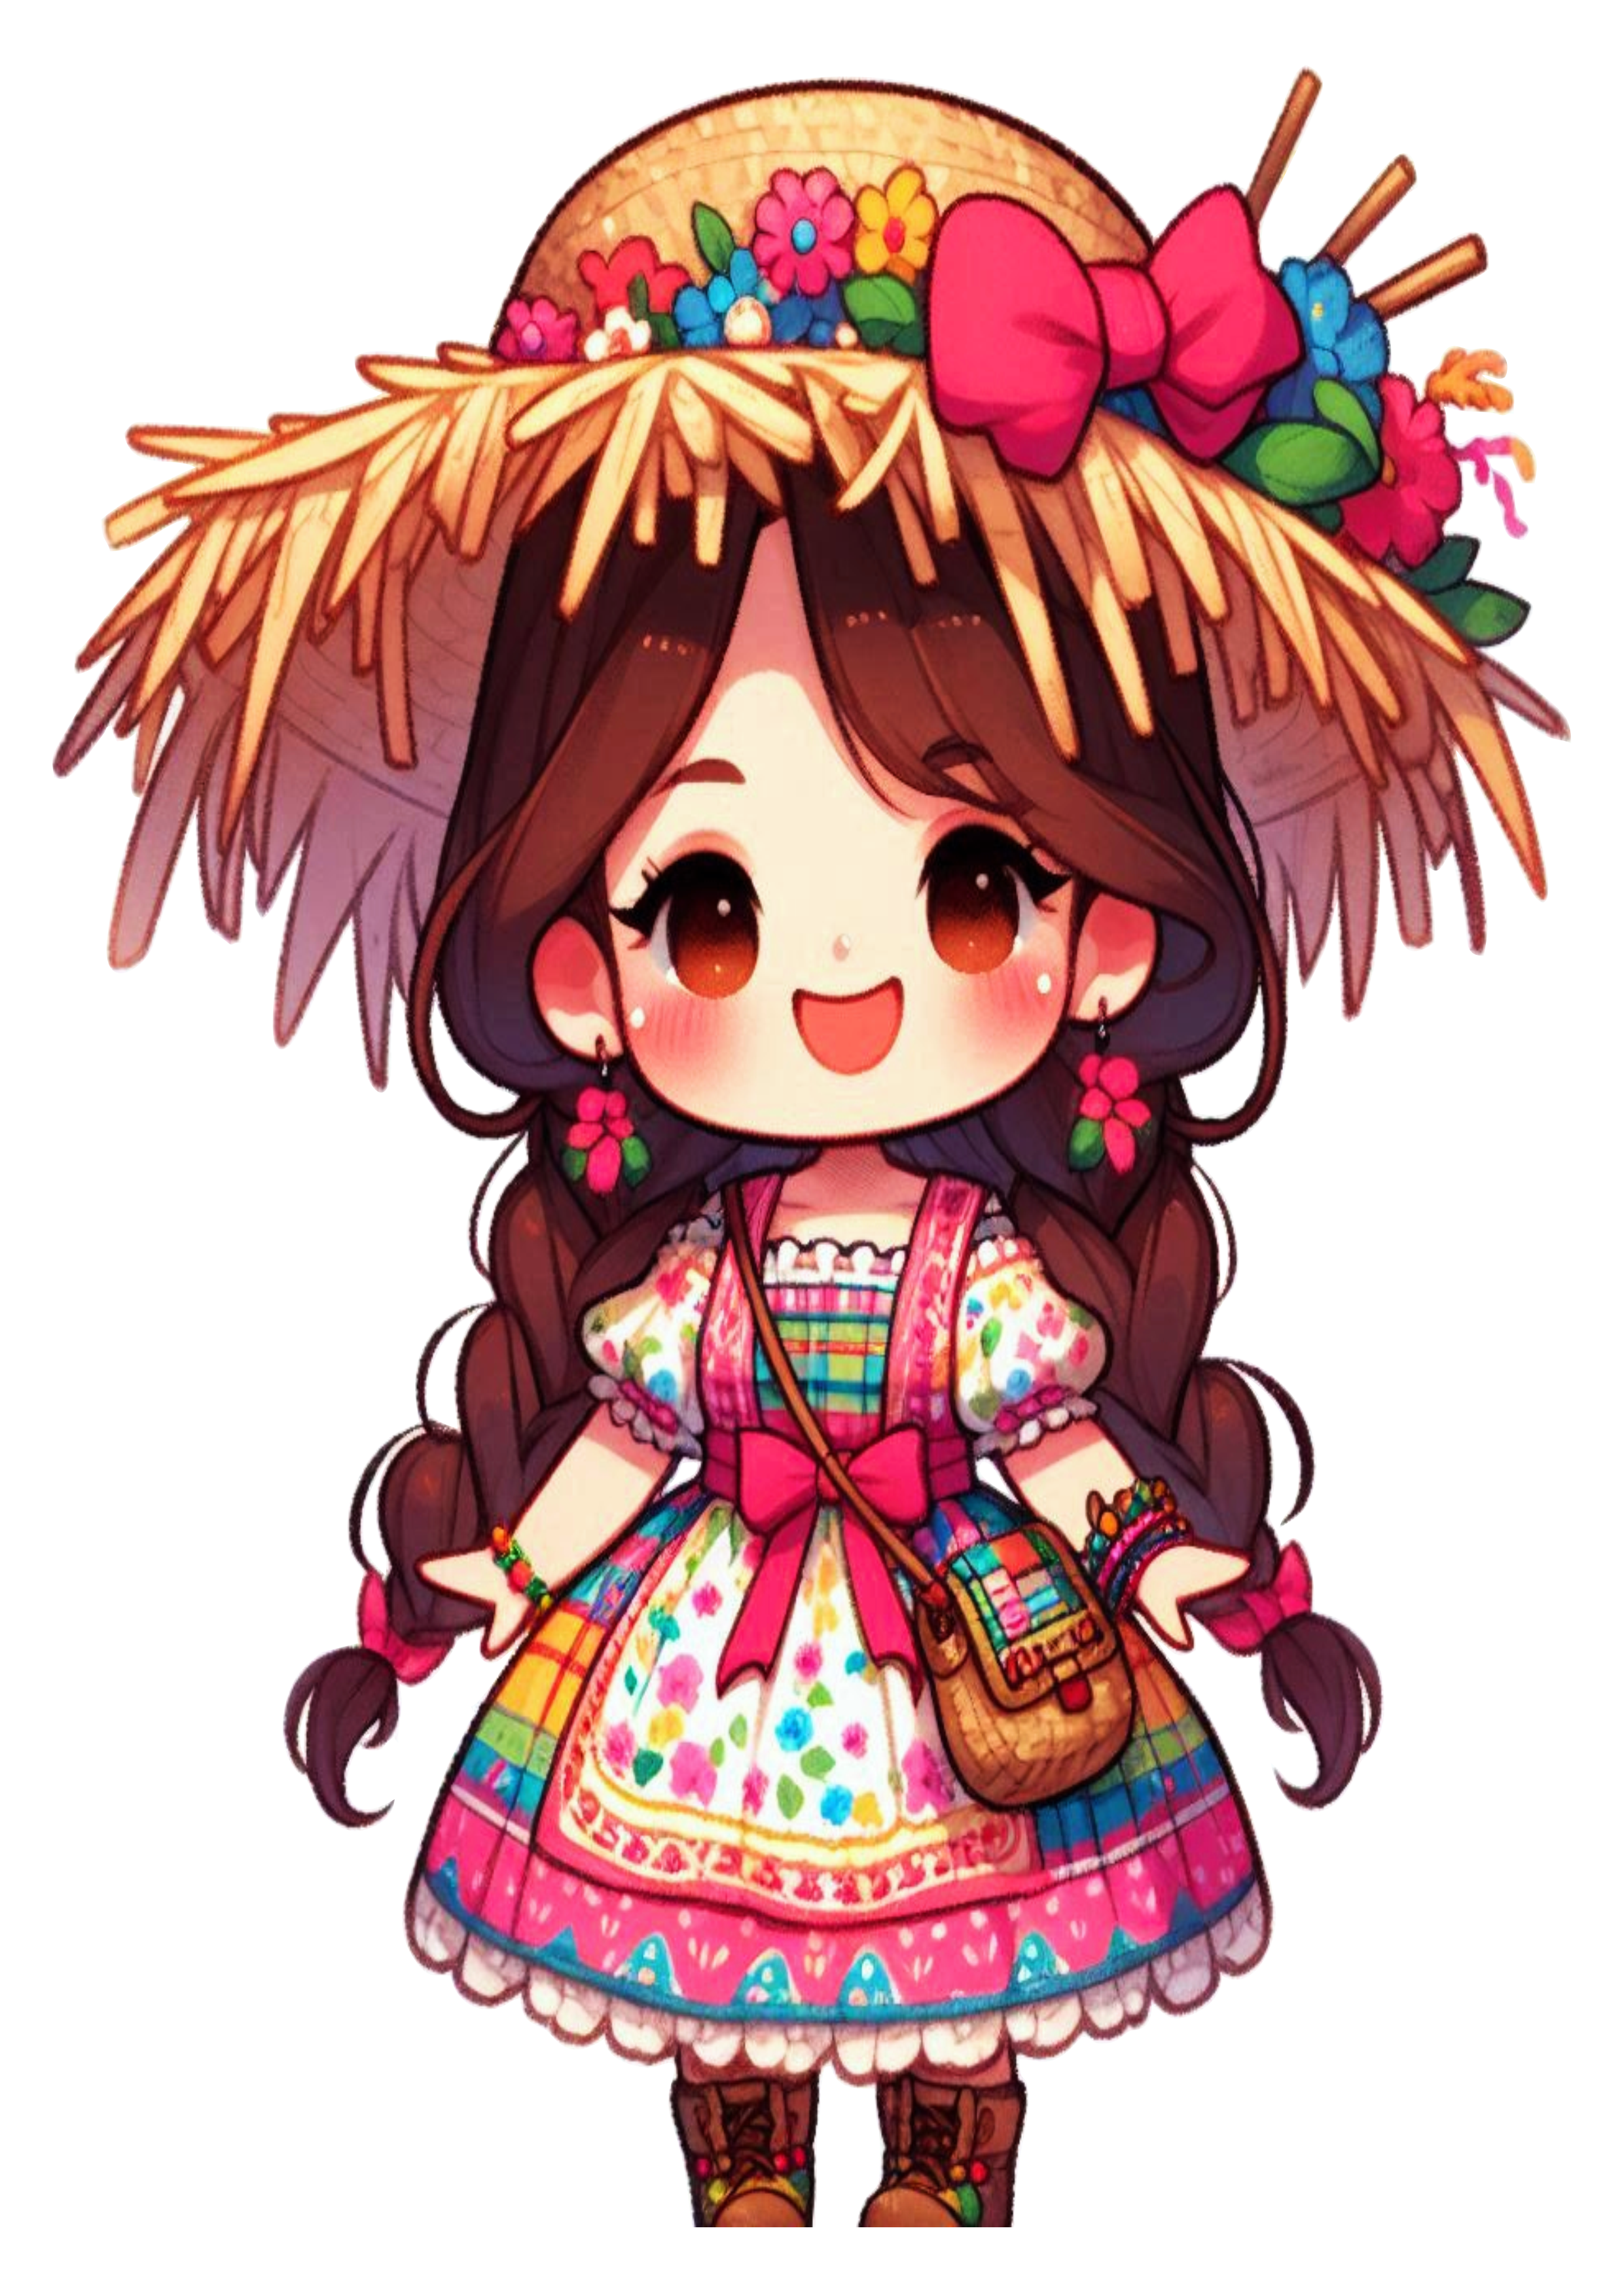 Fantasia de festa junina mocinha bonita São João Vestido colorido trancinhas no cabelo chapéu de palha artes gráficas png